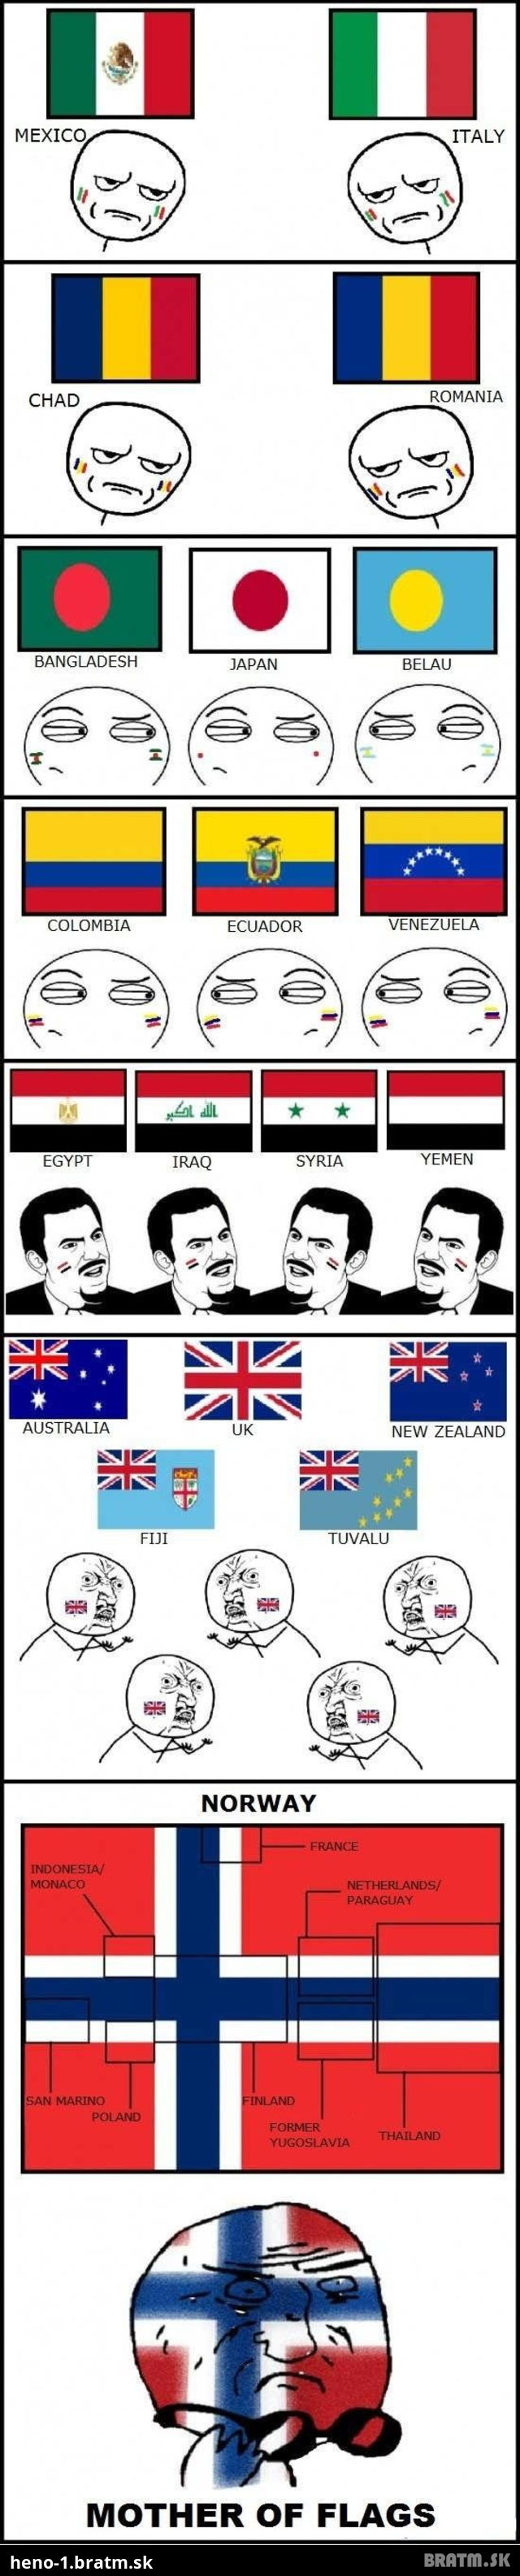 Viete ako vznikali vlajky? Pozrite si tento zábavný post :)